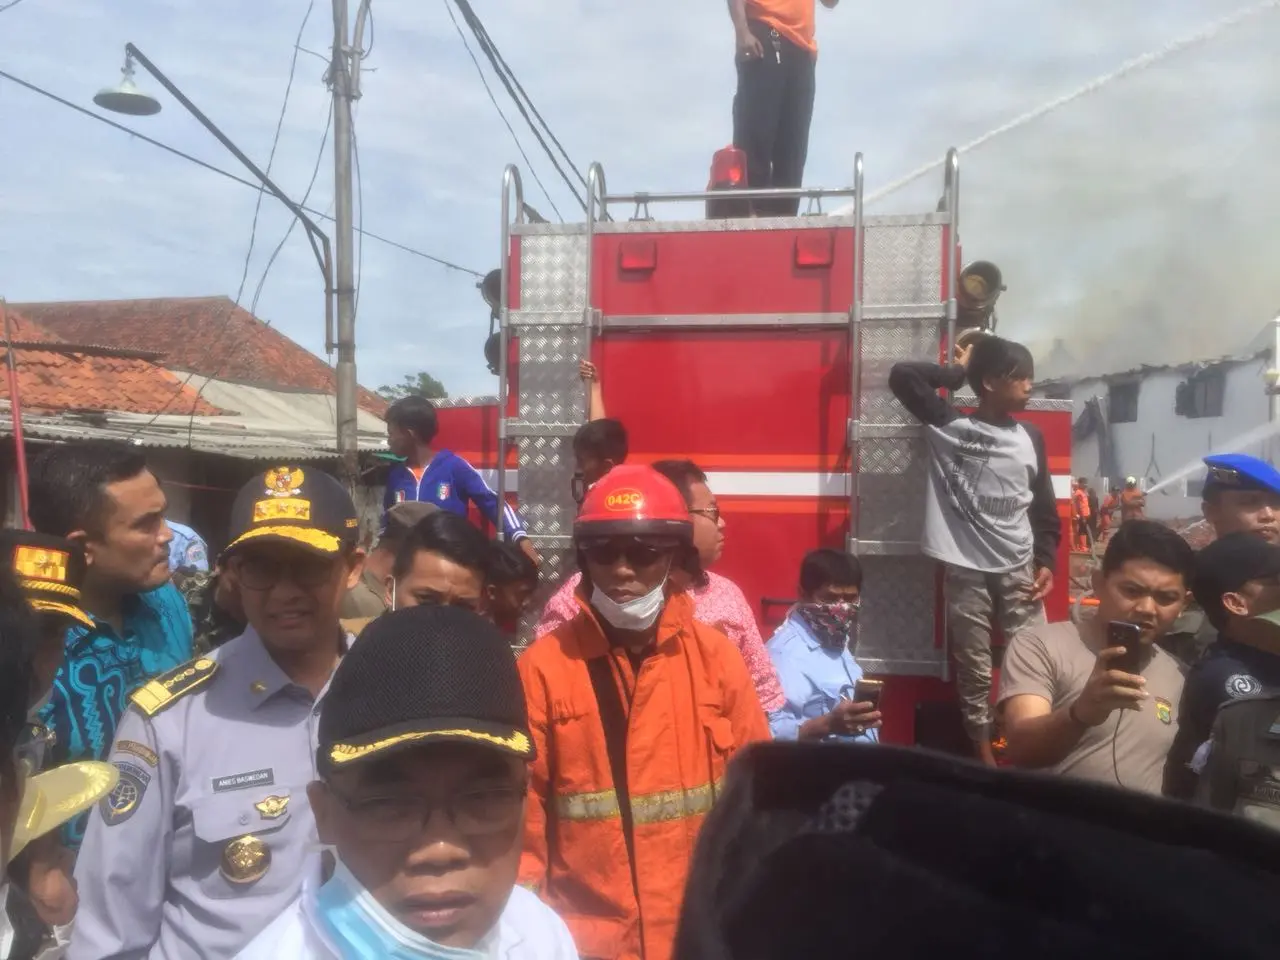 Gubernur DKI Jakarta Anies Baswedan meninjau lokasi kebakaran di Museum Bahari (Liputan6.com/Delvira)